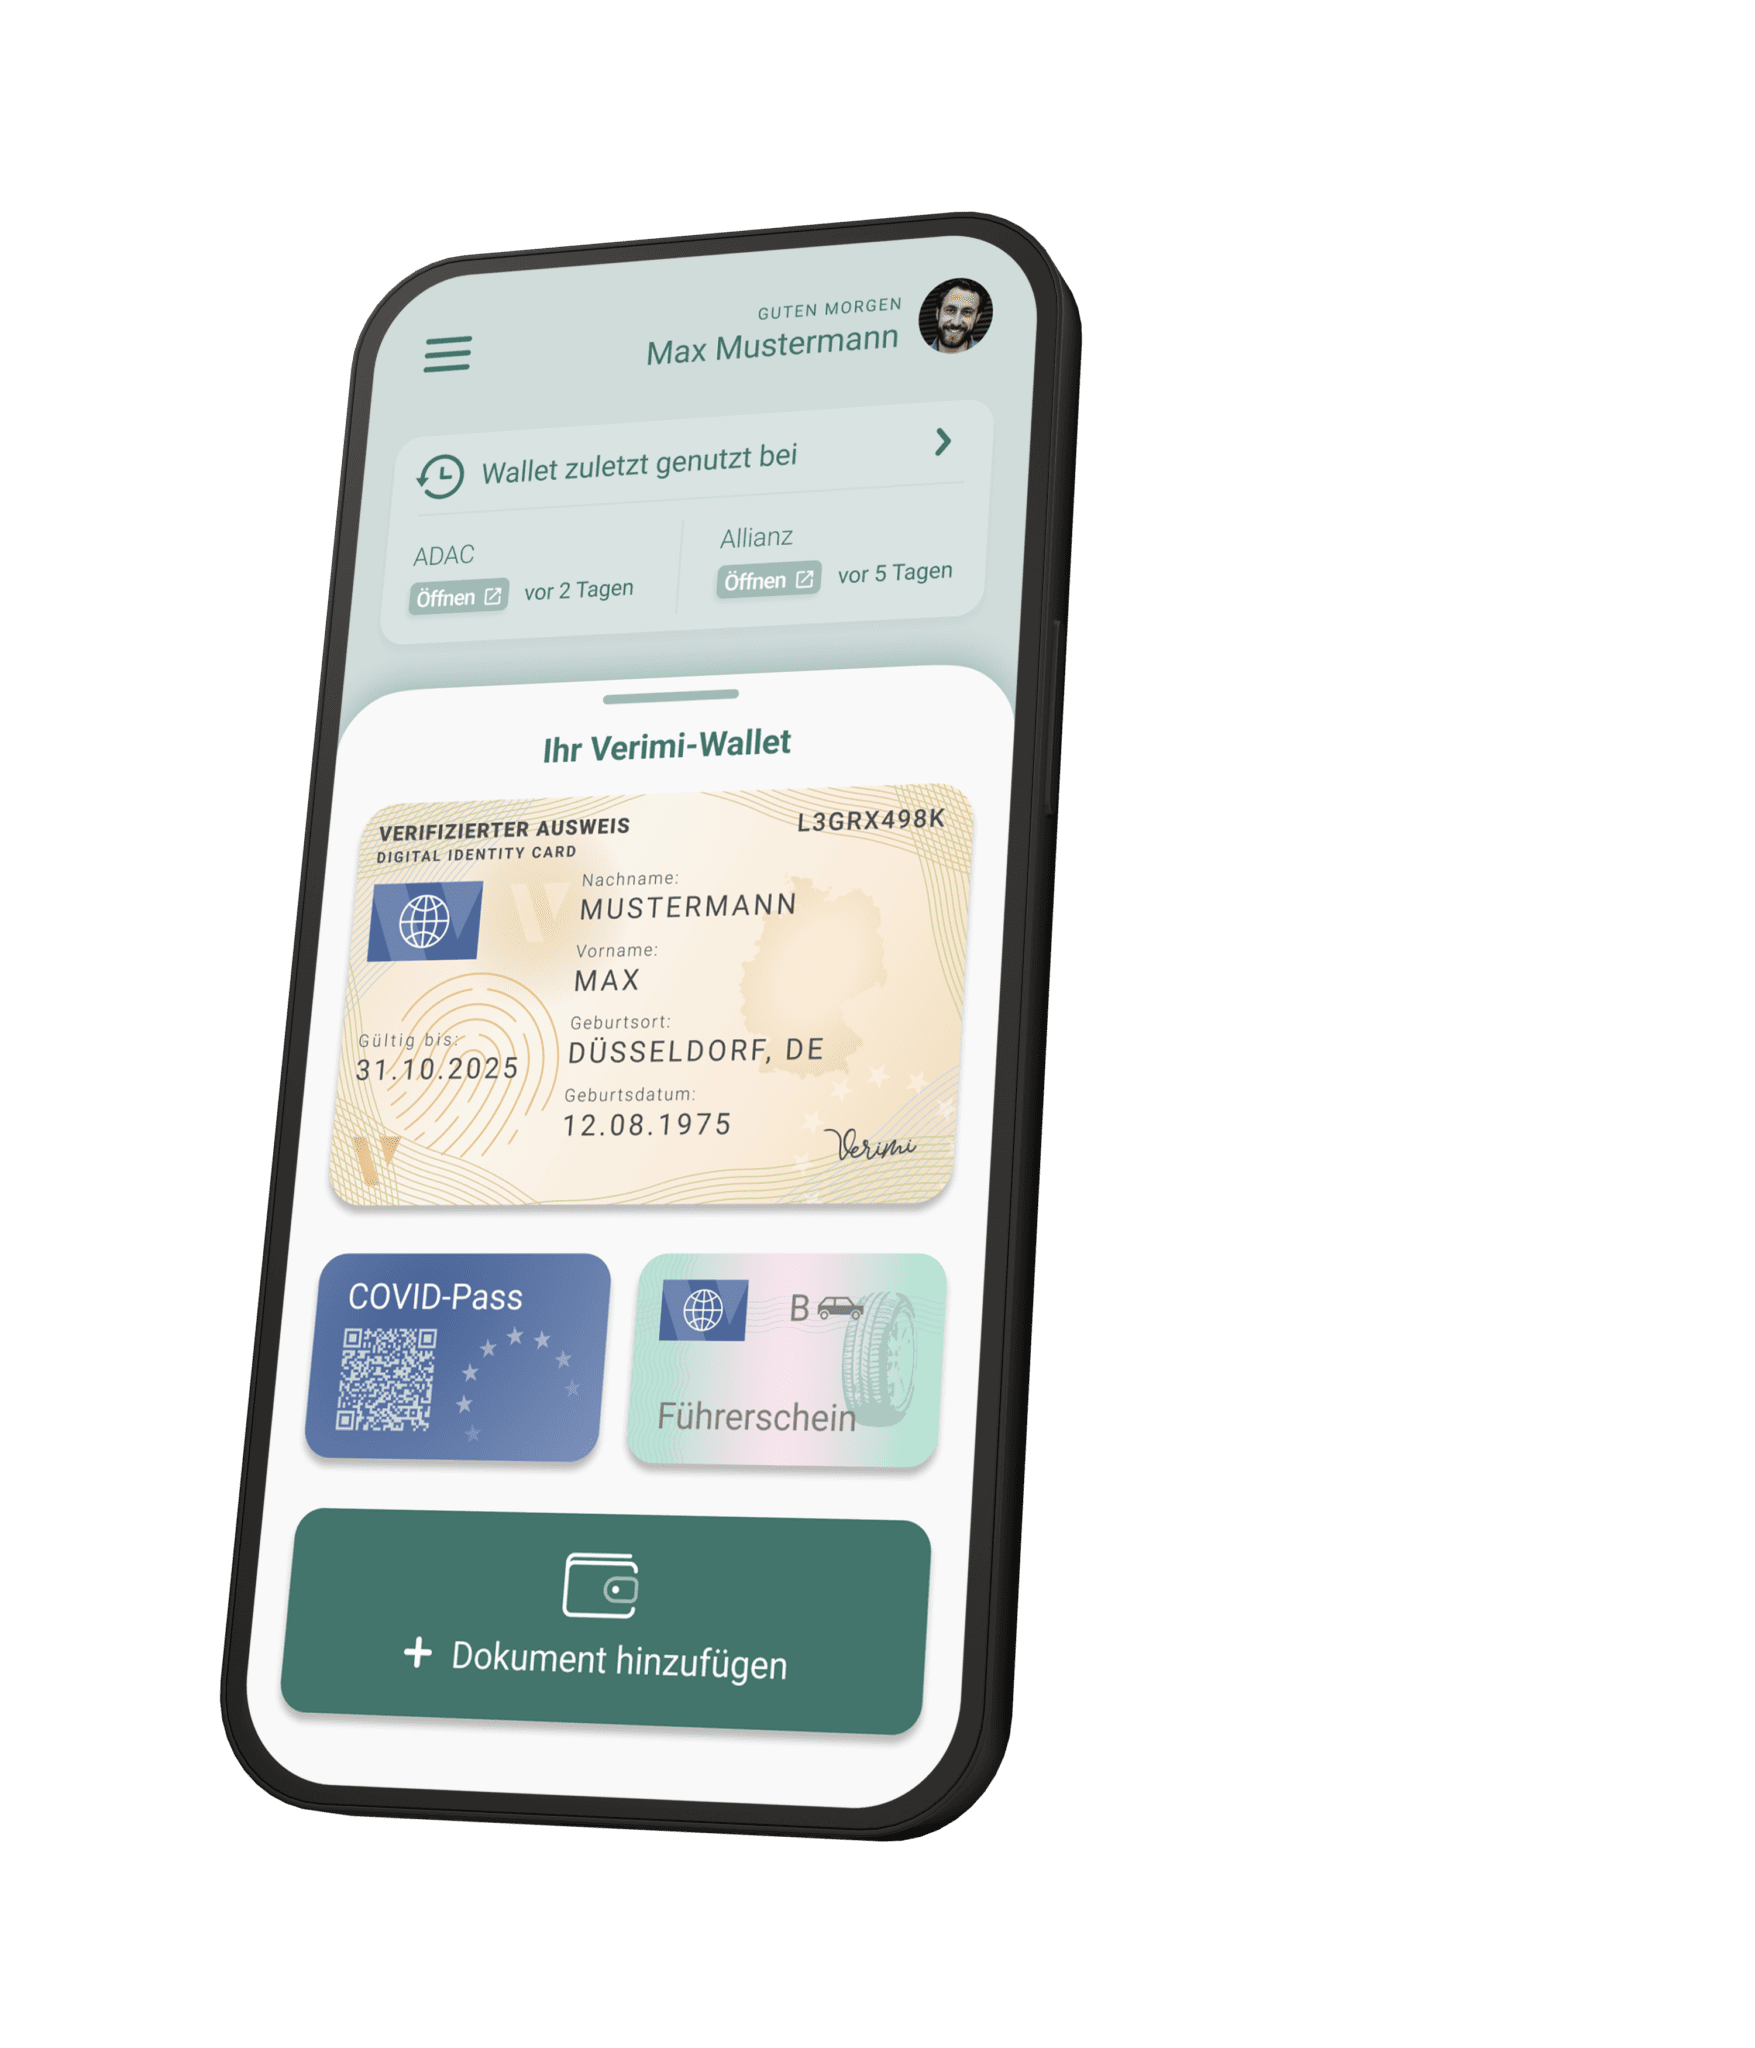 Smartphone-Bildschirm zeigt eine digitale Wallet-App mit personalisierten Dokumenten, einschließlich eines digitalen Identitätsnachweises und COVID-Pass.